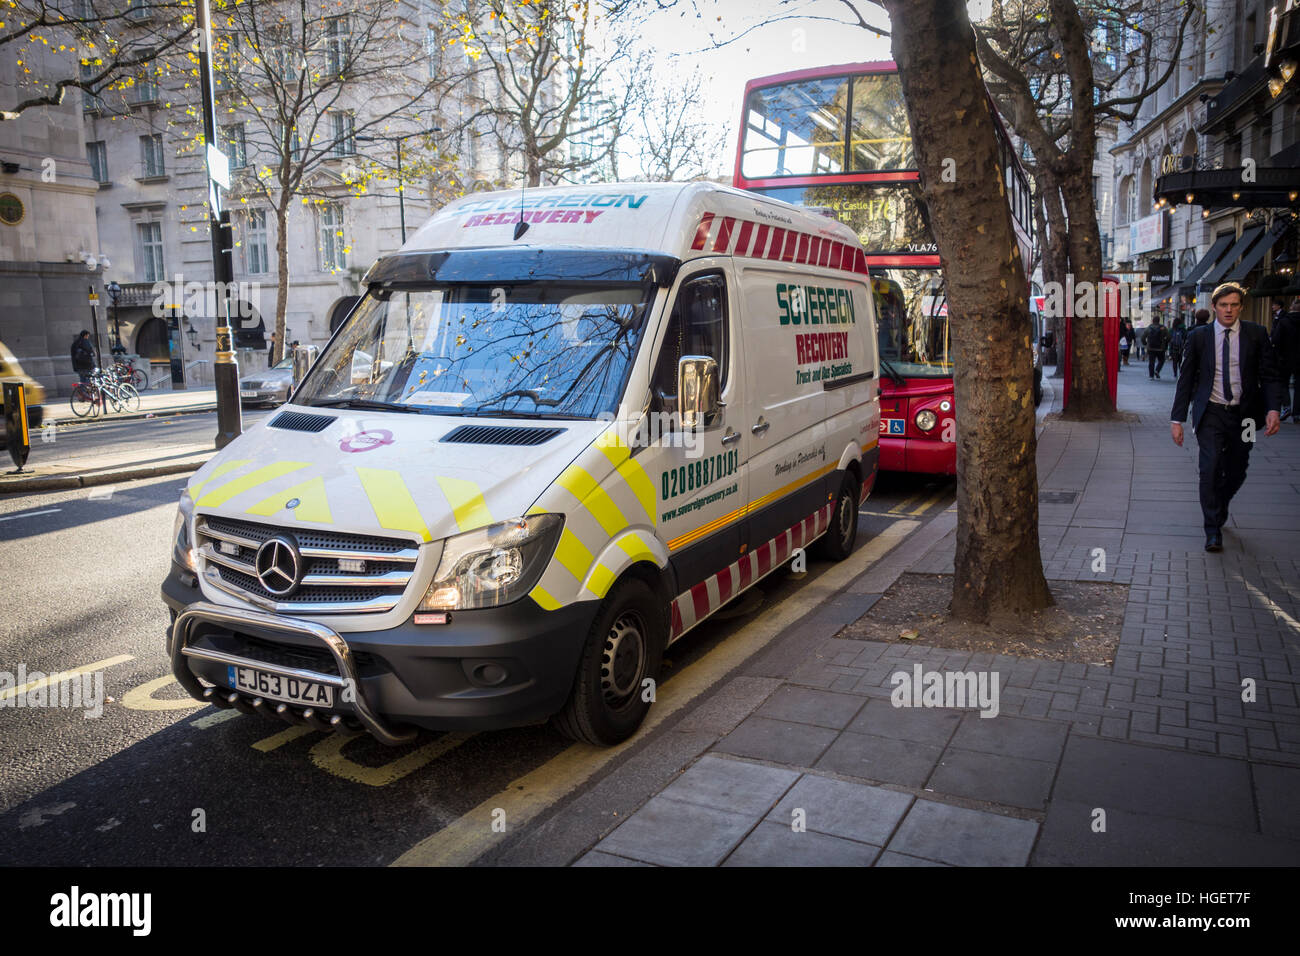 Récupération souverain van fixant un ventilé London bus rouge à Covent Garden, Londres, UK Banque D'Images